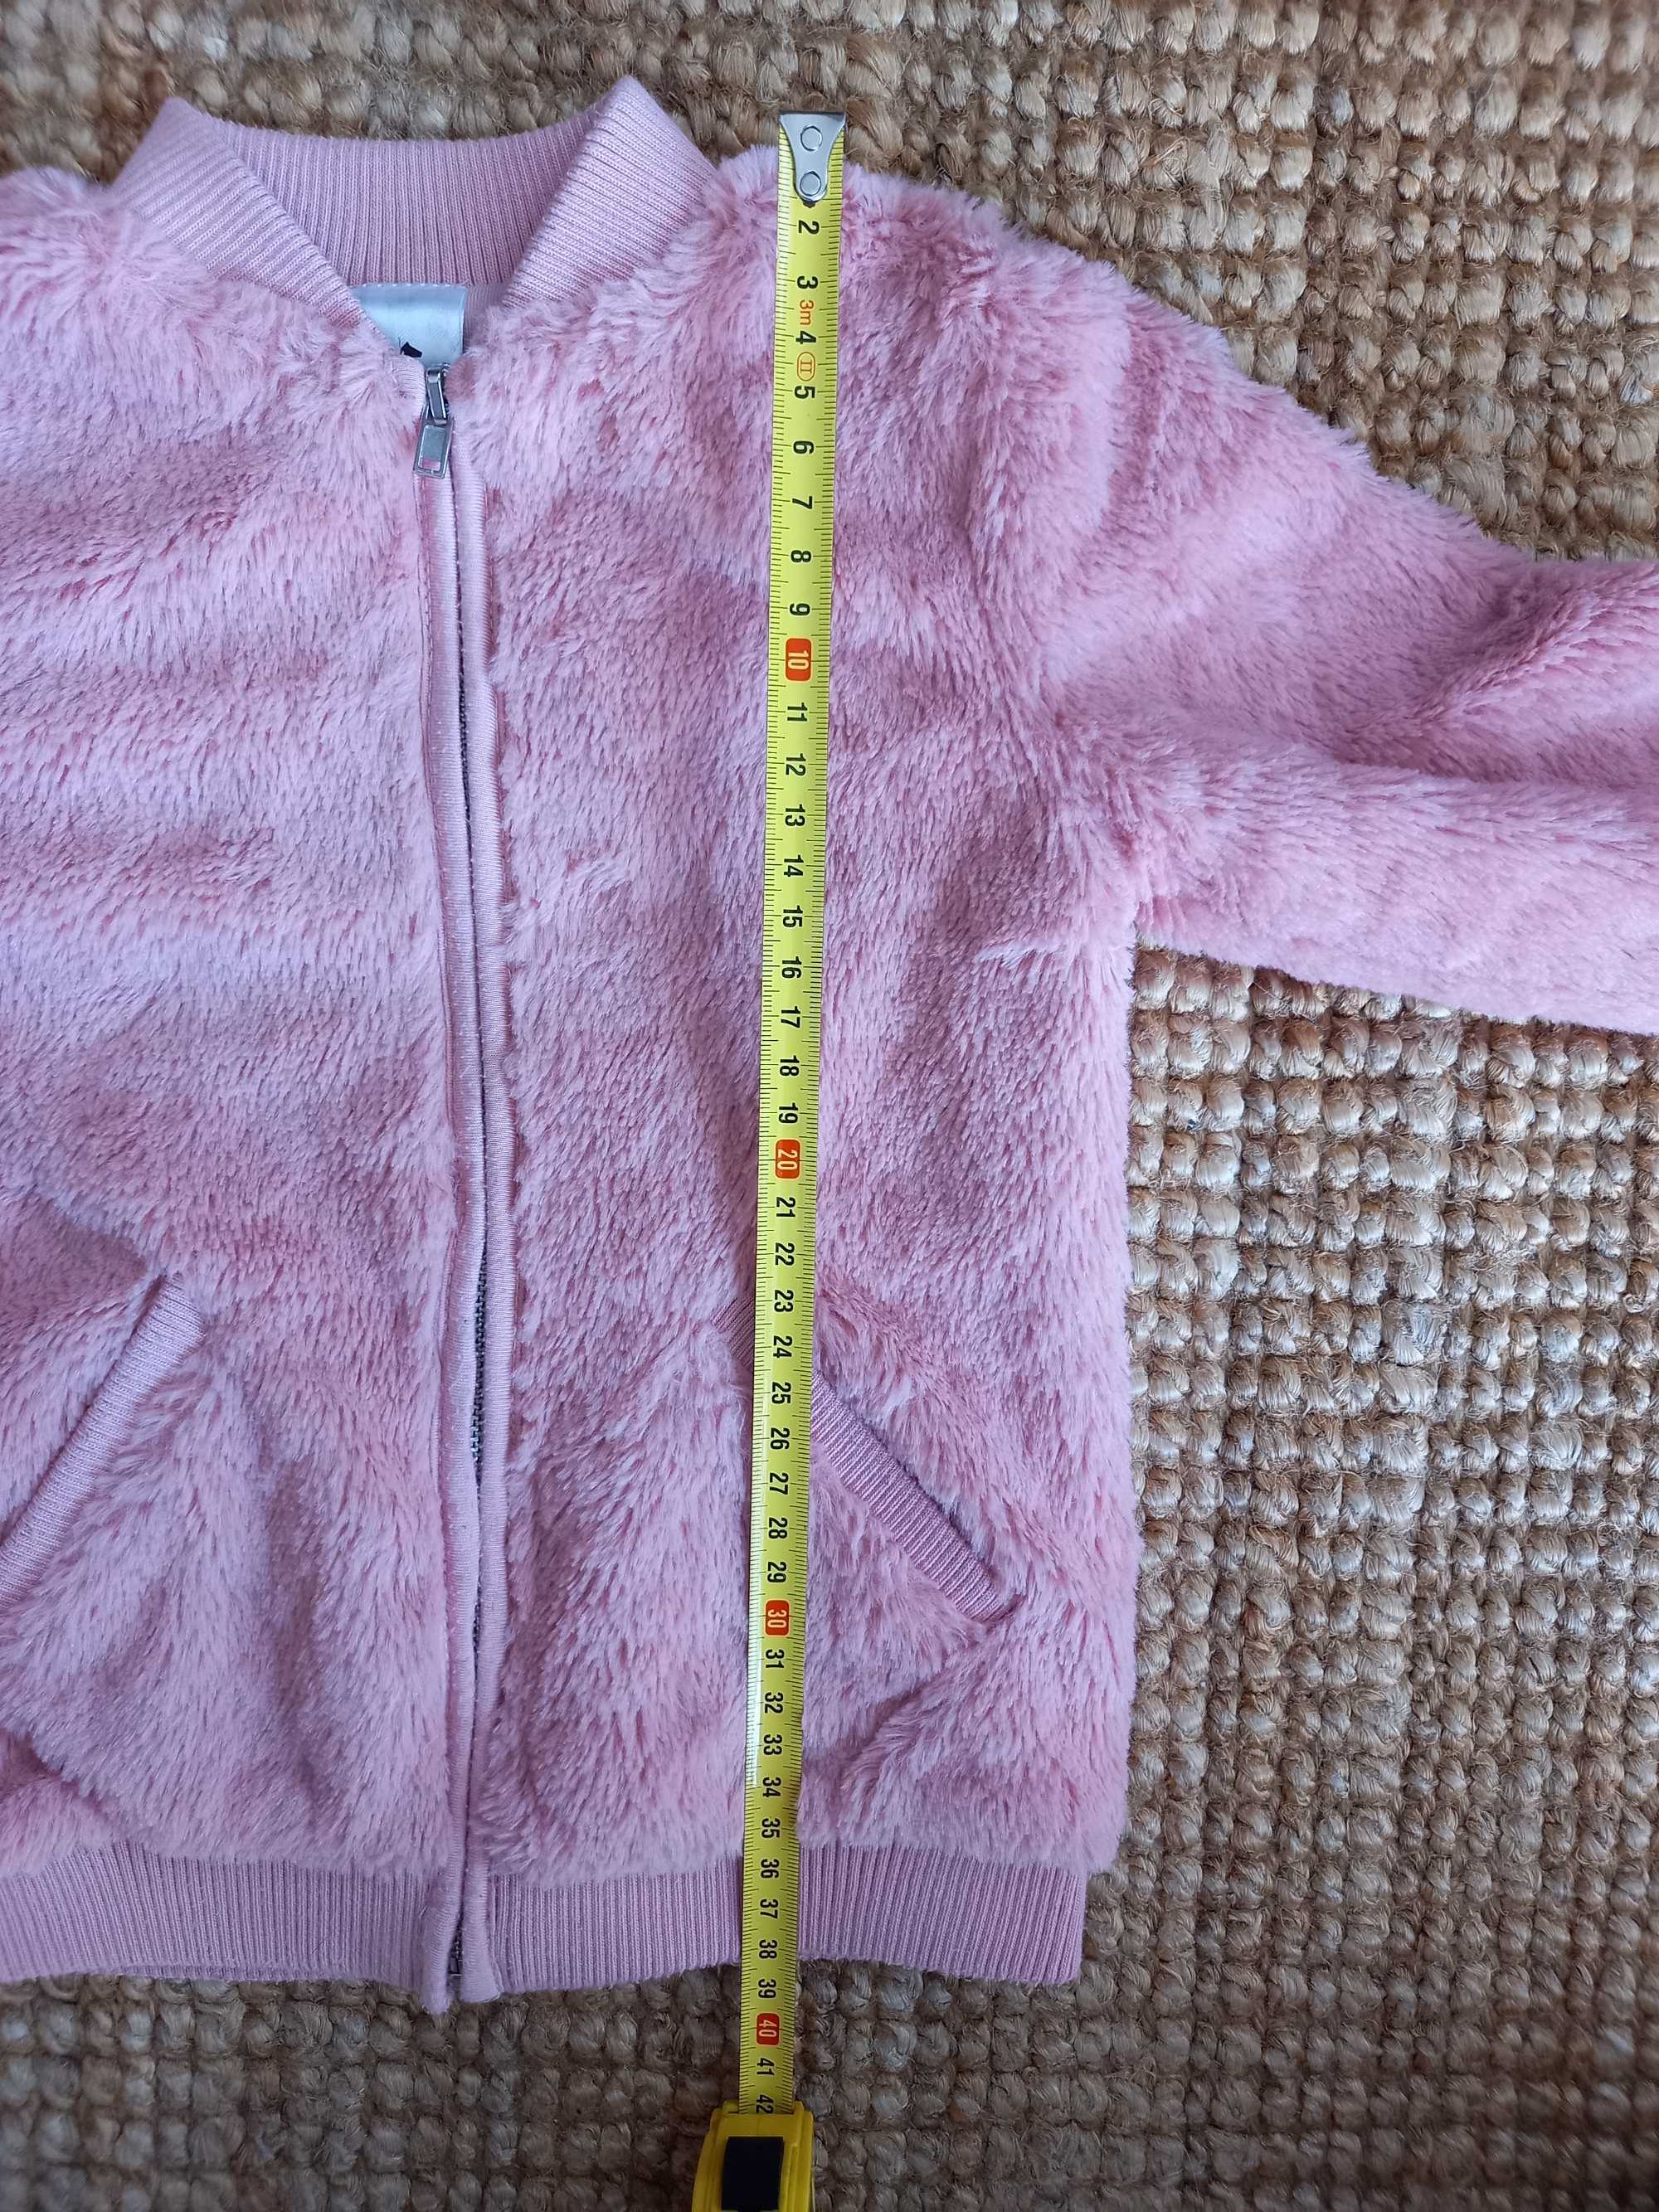 Bluza ciepła/Bomberka typu miś dla dziewczynki rozmiar 98